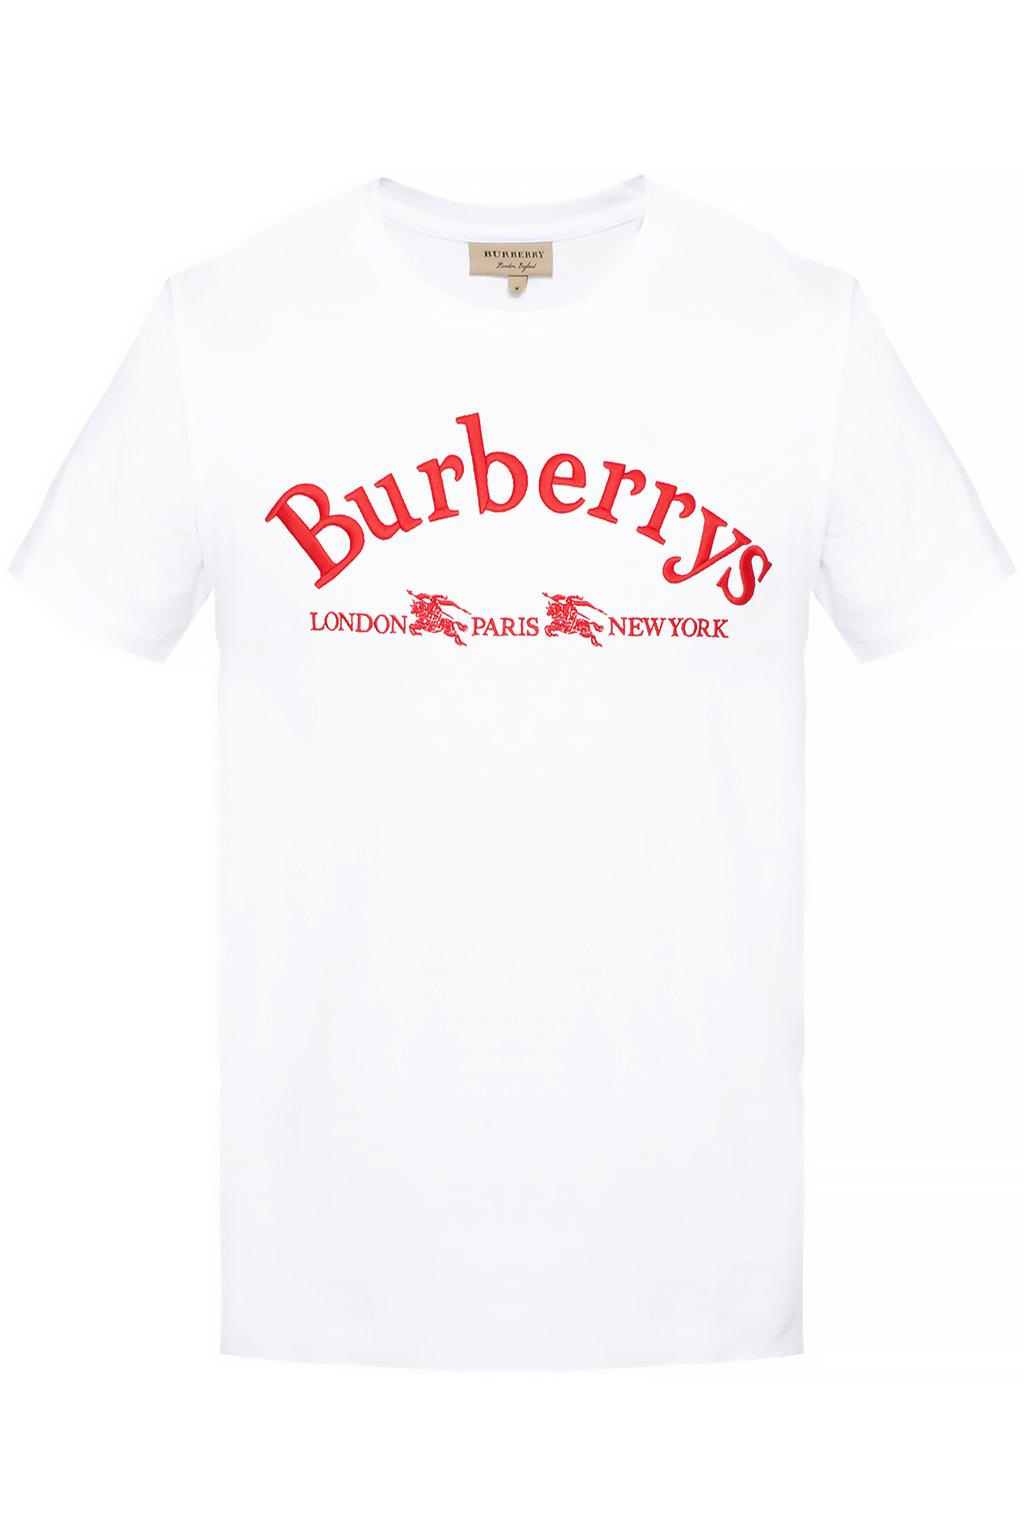 Burberry Logo T Shirt Shop, 51% OFF | campingcanyelles.com